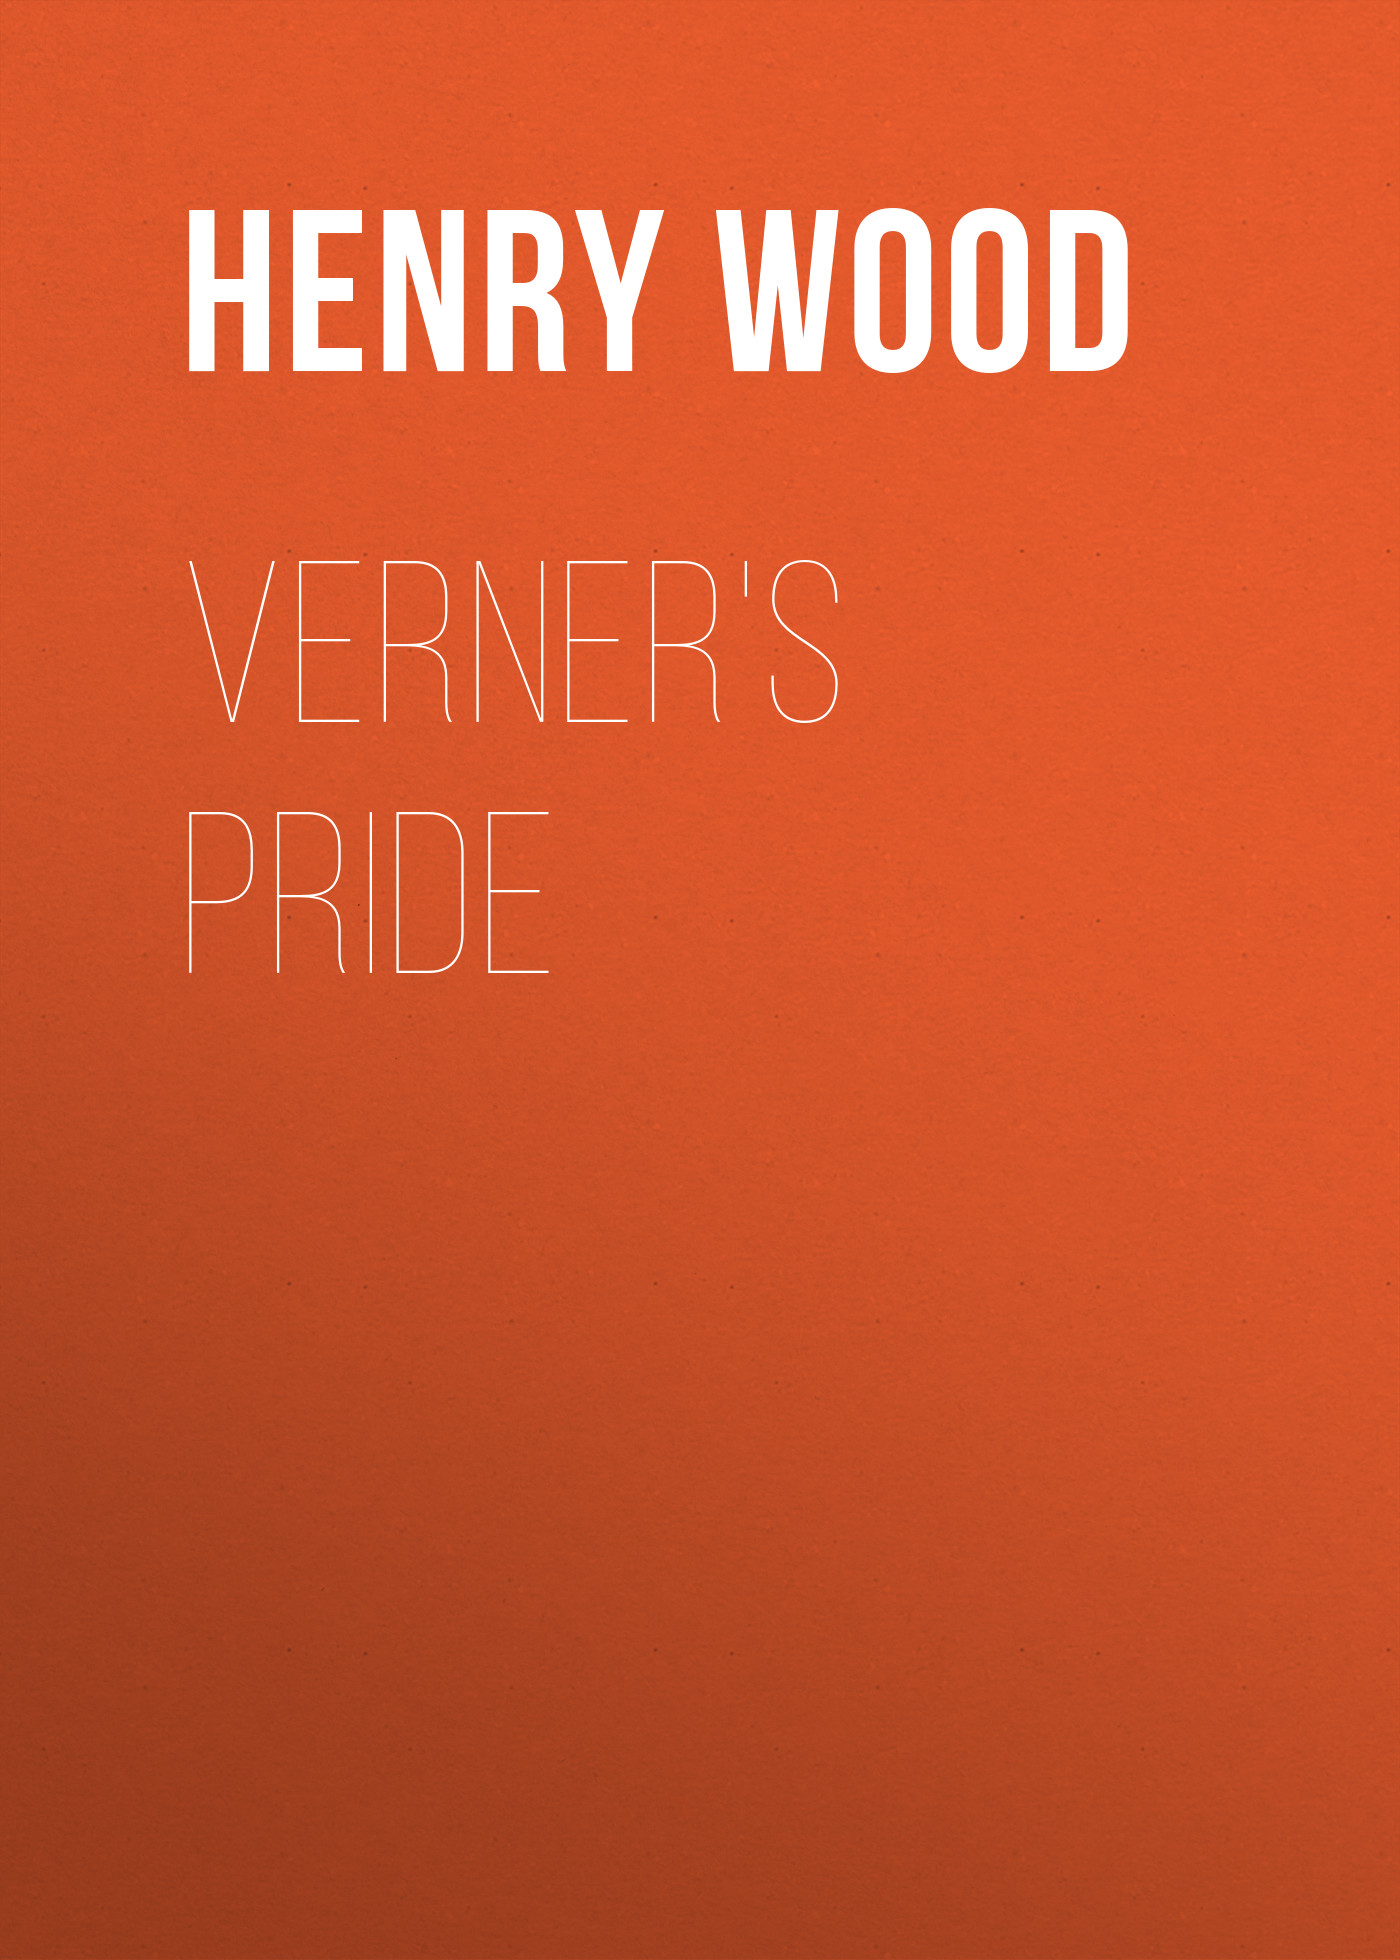 Книга Verner's Pride из серии , созданная Henry Wood, может относится к жанру Зарубежная классика, Литература 19 века, Зарубежная старинная литература. Стоимость электронной книги Verner's Pride с идентификатором 35008489 составляет 0 руб.